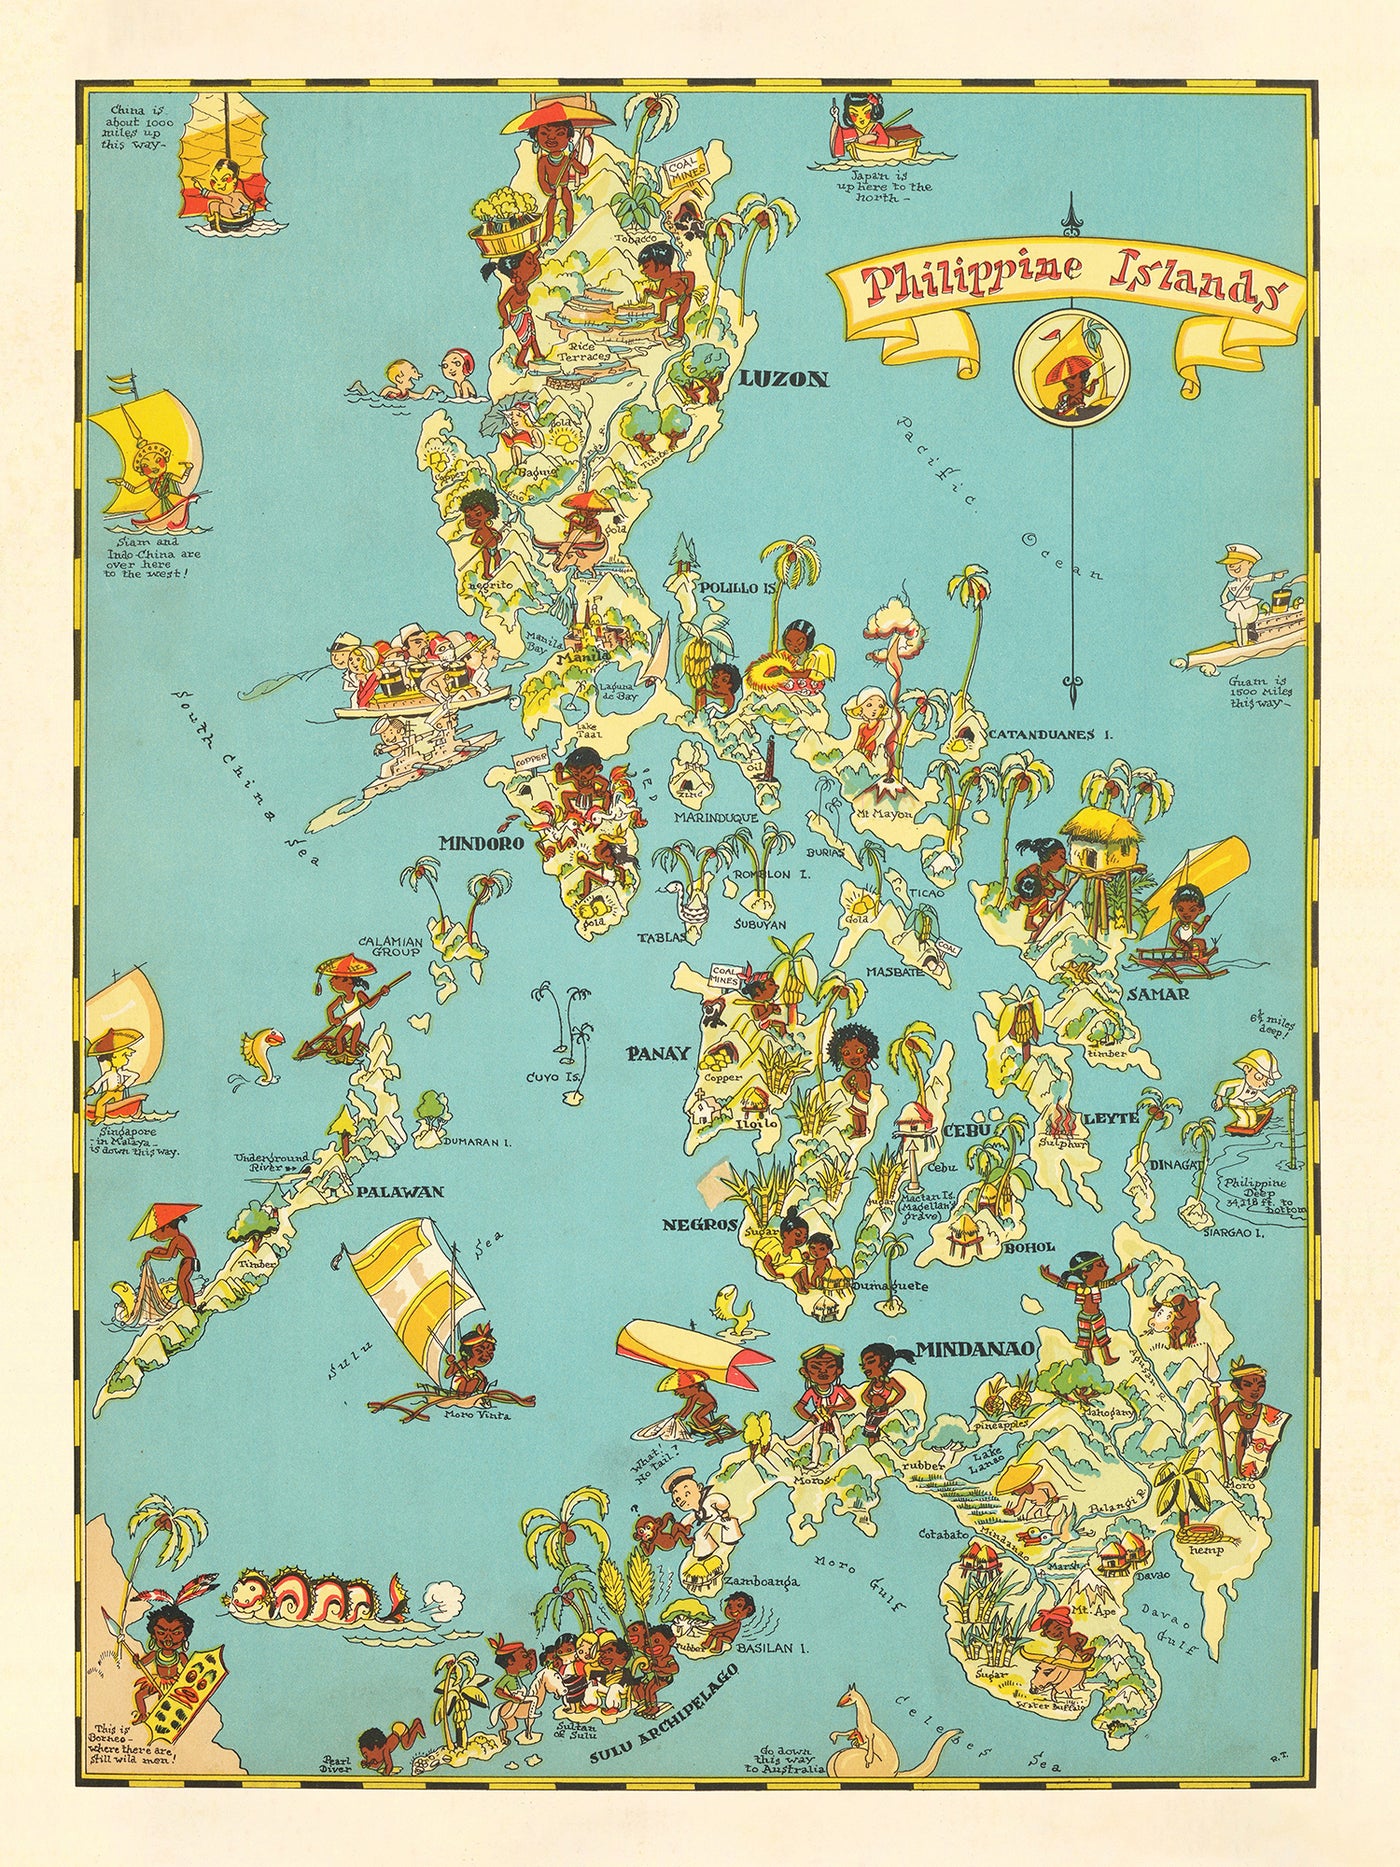 Ancienne carte des Philippines par Ruth Taylor White, 1935 : Manille, Luçon, Samar, Mindanao et l'archipel de Sulu